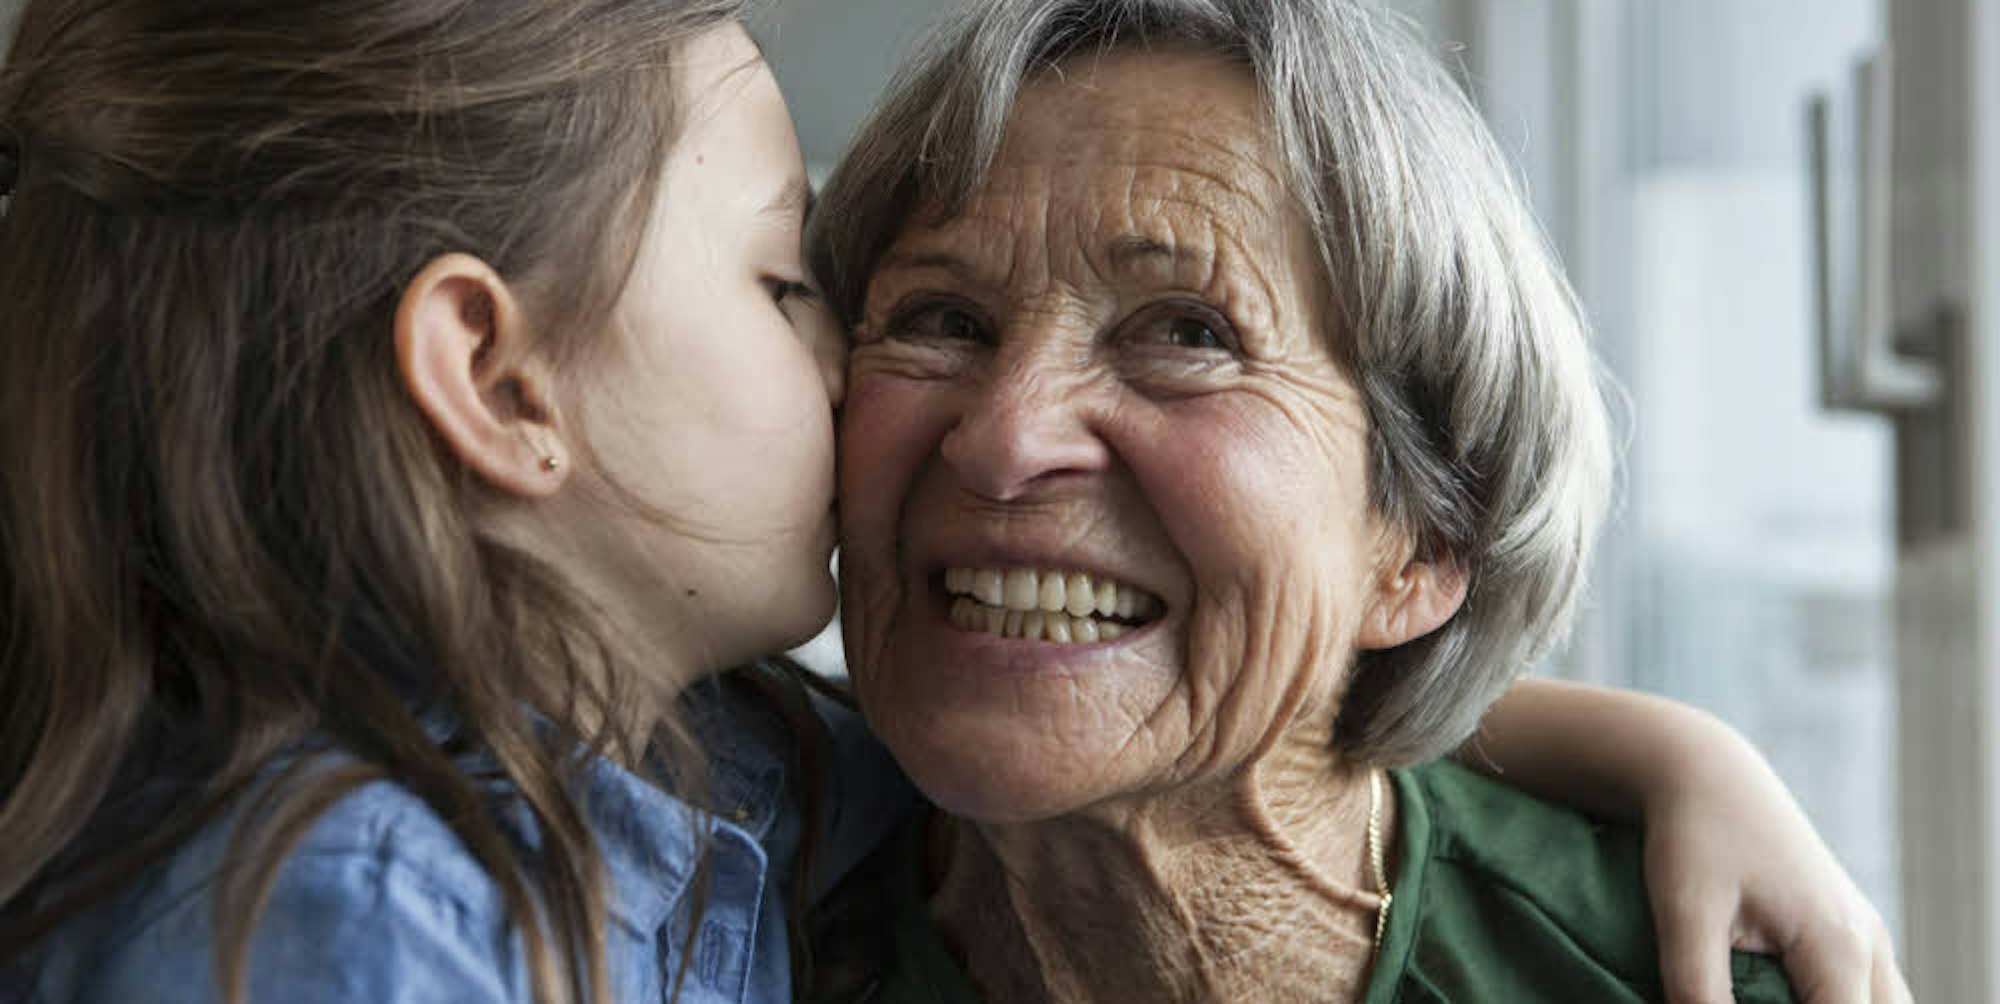 Vertrauensverhältnis: Zwischen Enkeln und Großeltern geht es oft besonders herzlich zu.